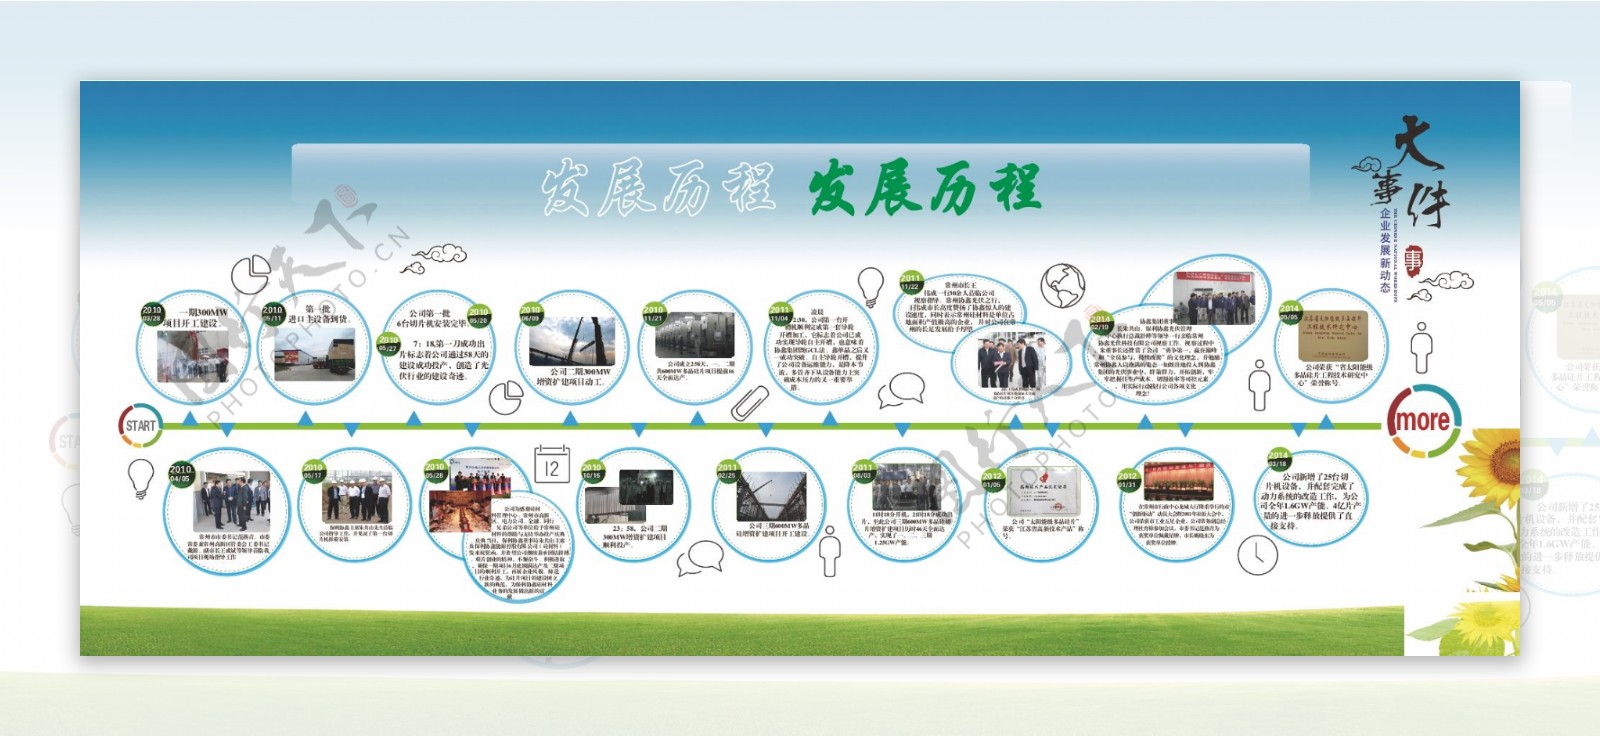 企业文化发展历年事件展示海报展板蓝绿设计